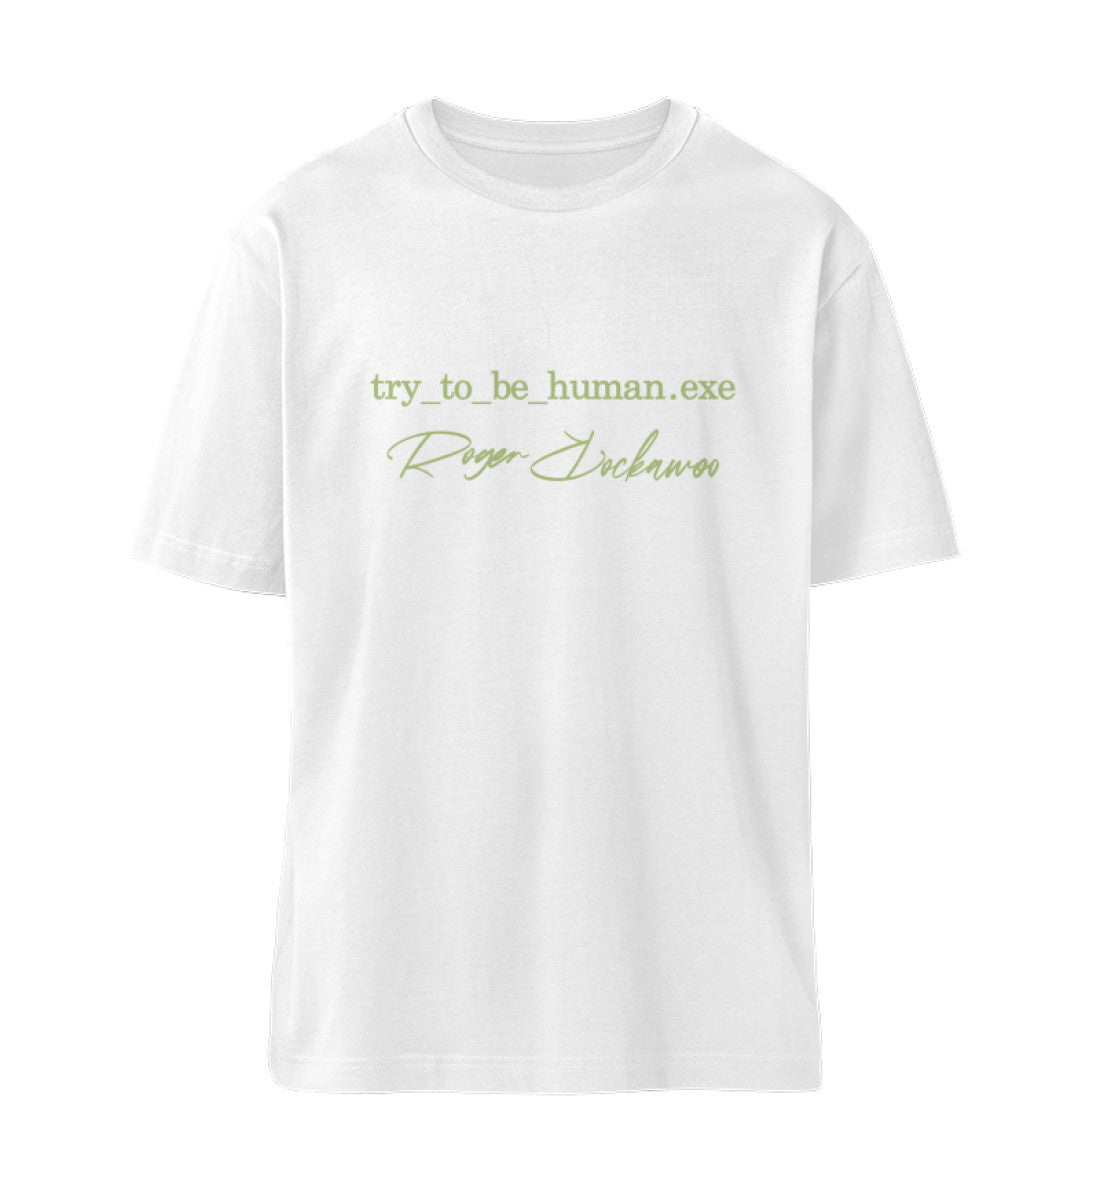 Weißes T-Shirt Unisex Relaxed Fit für Frauen und Männer bedruckt mit dem Design der Roger Rockawoo Kollektion Try To Be Human